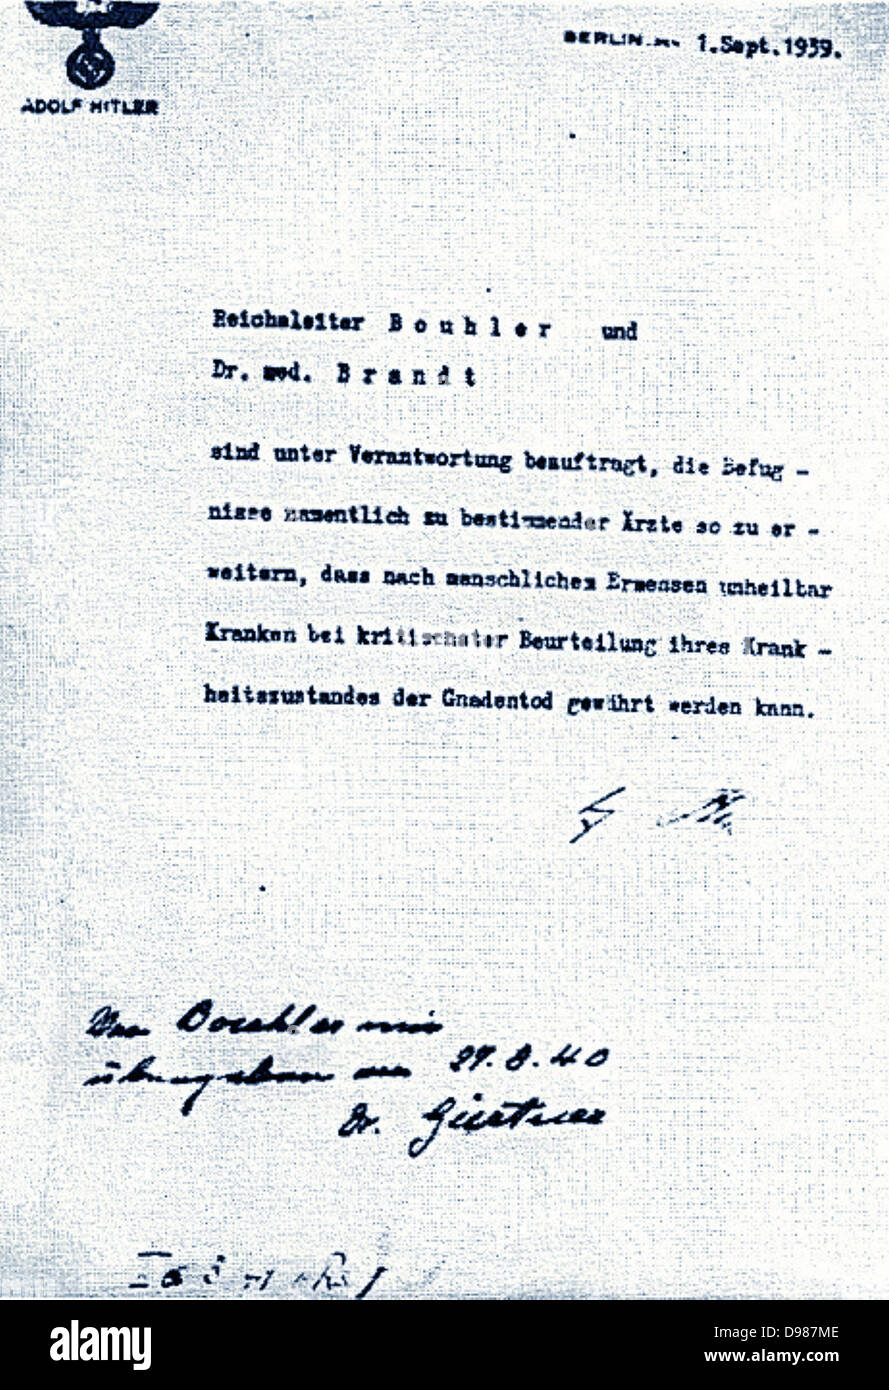 Hitlers Unterschrift auf eine Bestellung autorisieren unfreiwillige Euthanasie in Deutschland, Oktober 1939. Stockfoto